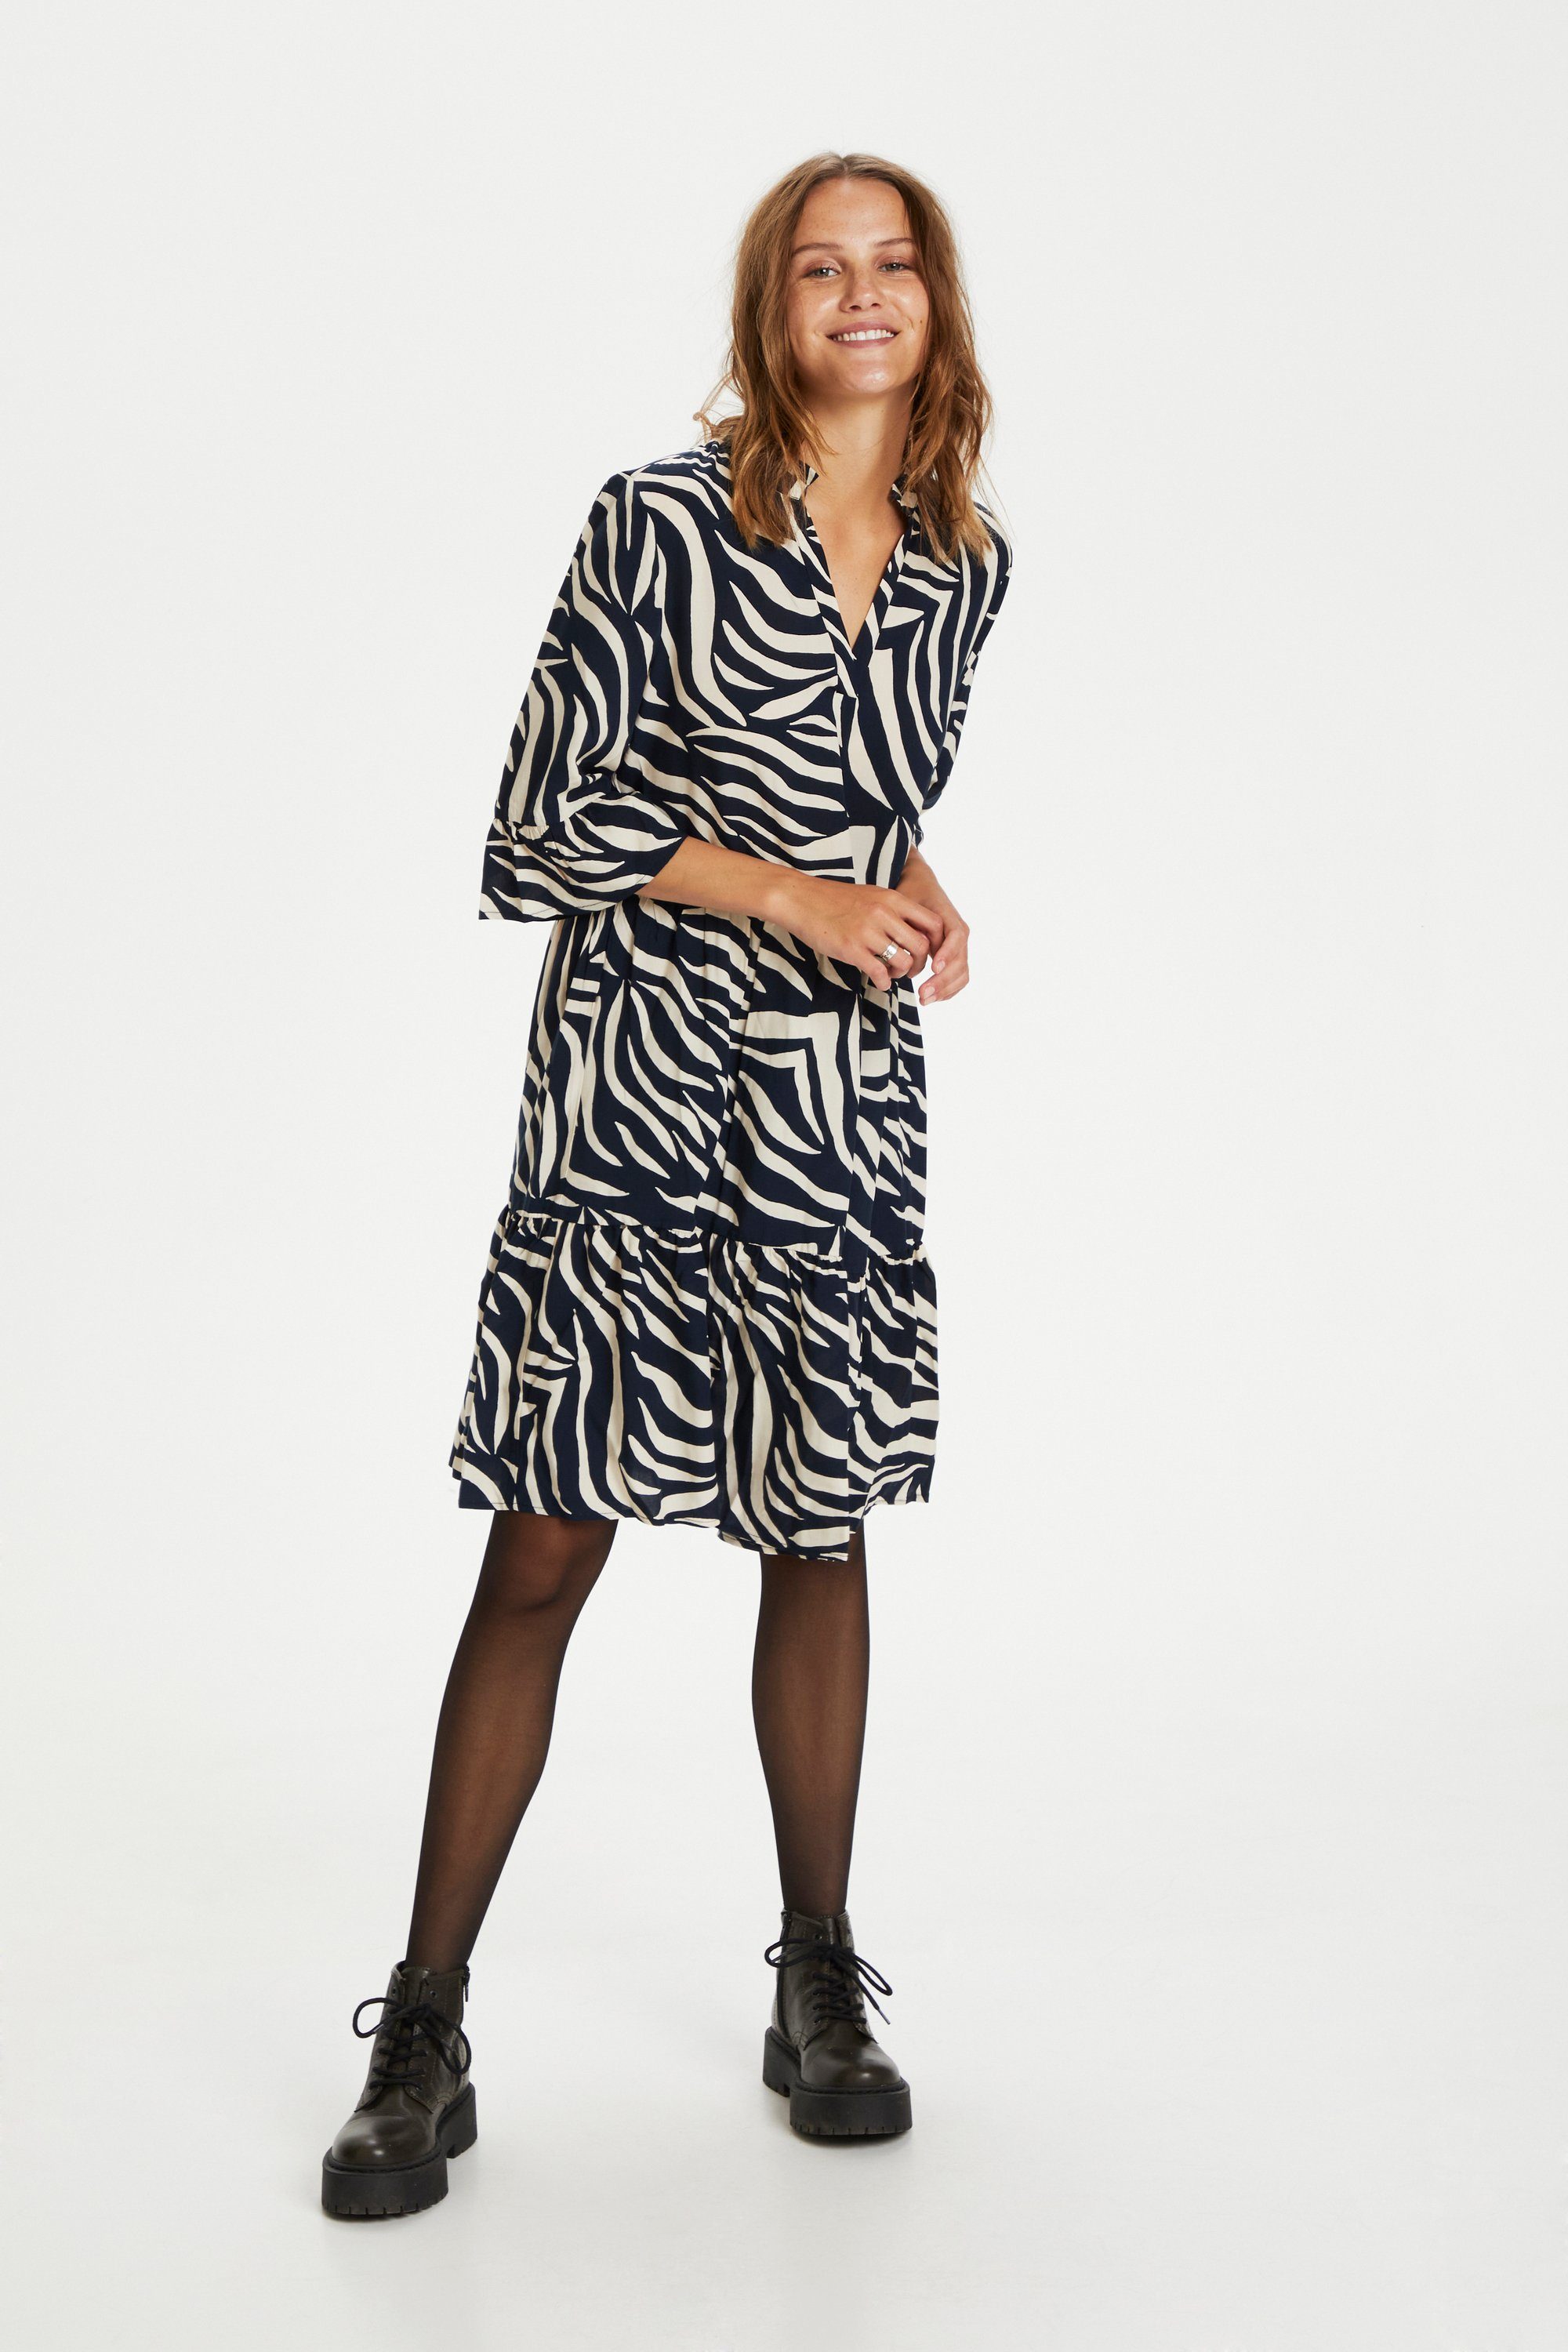 Saint Tropez Jerseykleid EdaSZ Eclipse Dress Total Zebra Skin